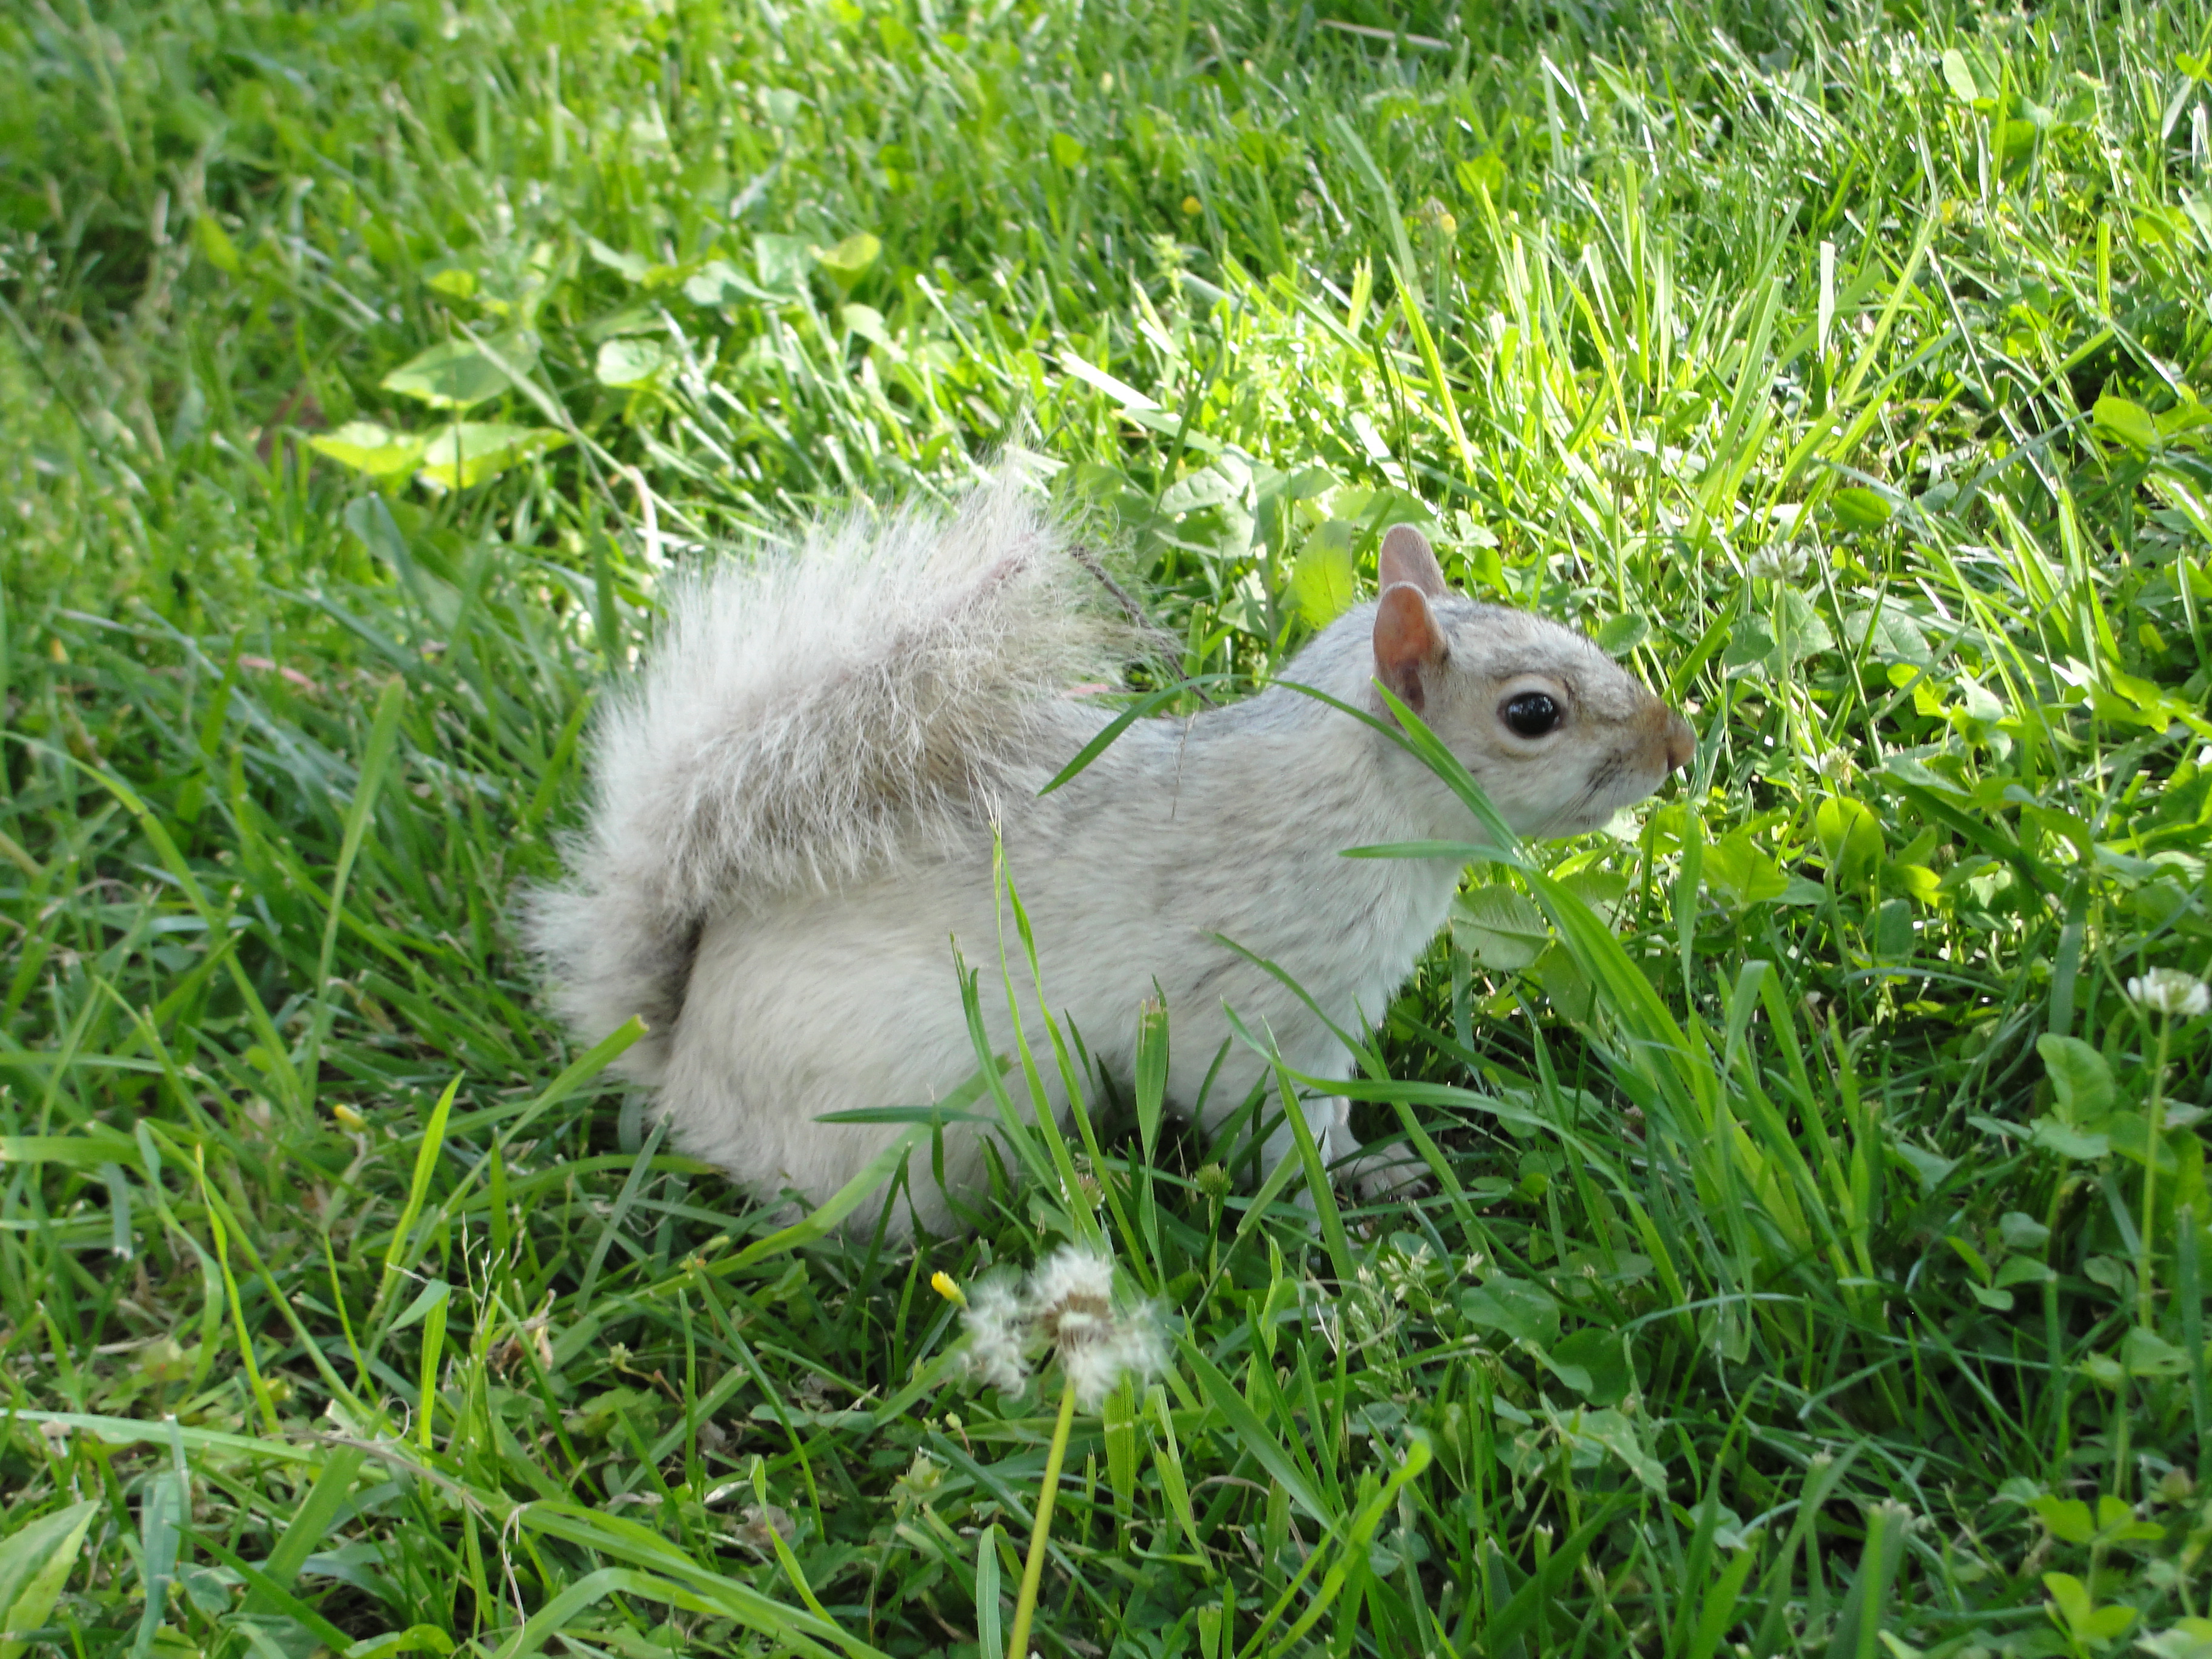 Squirrel encounter photo